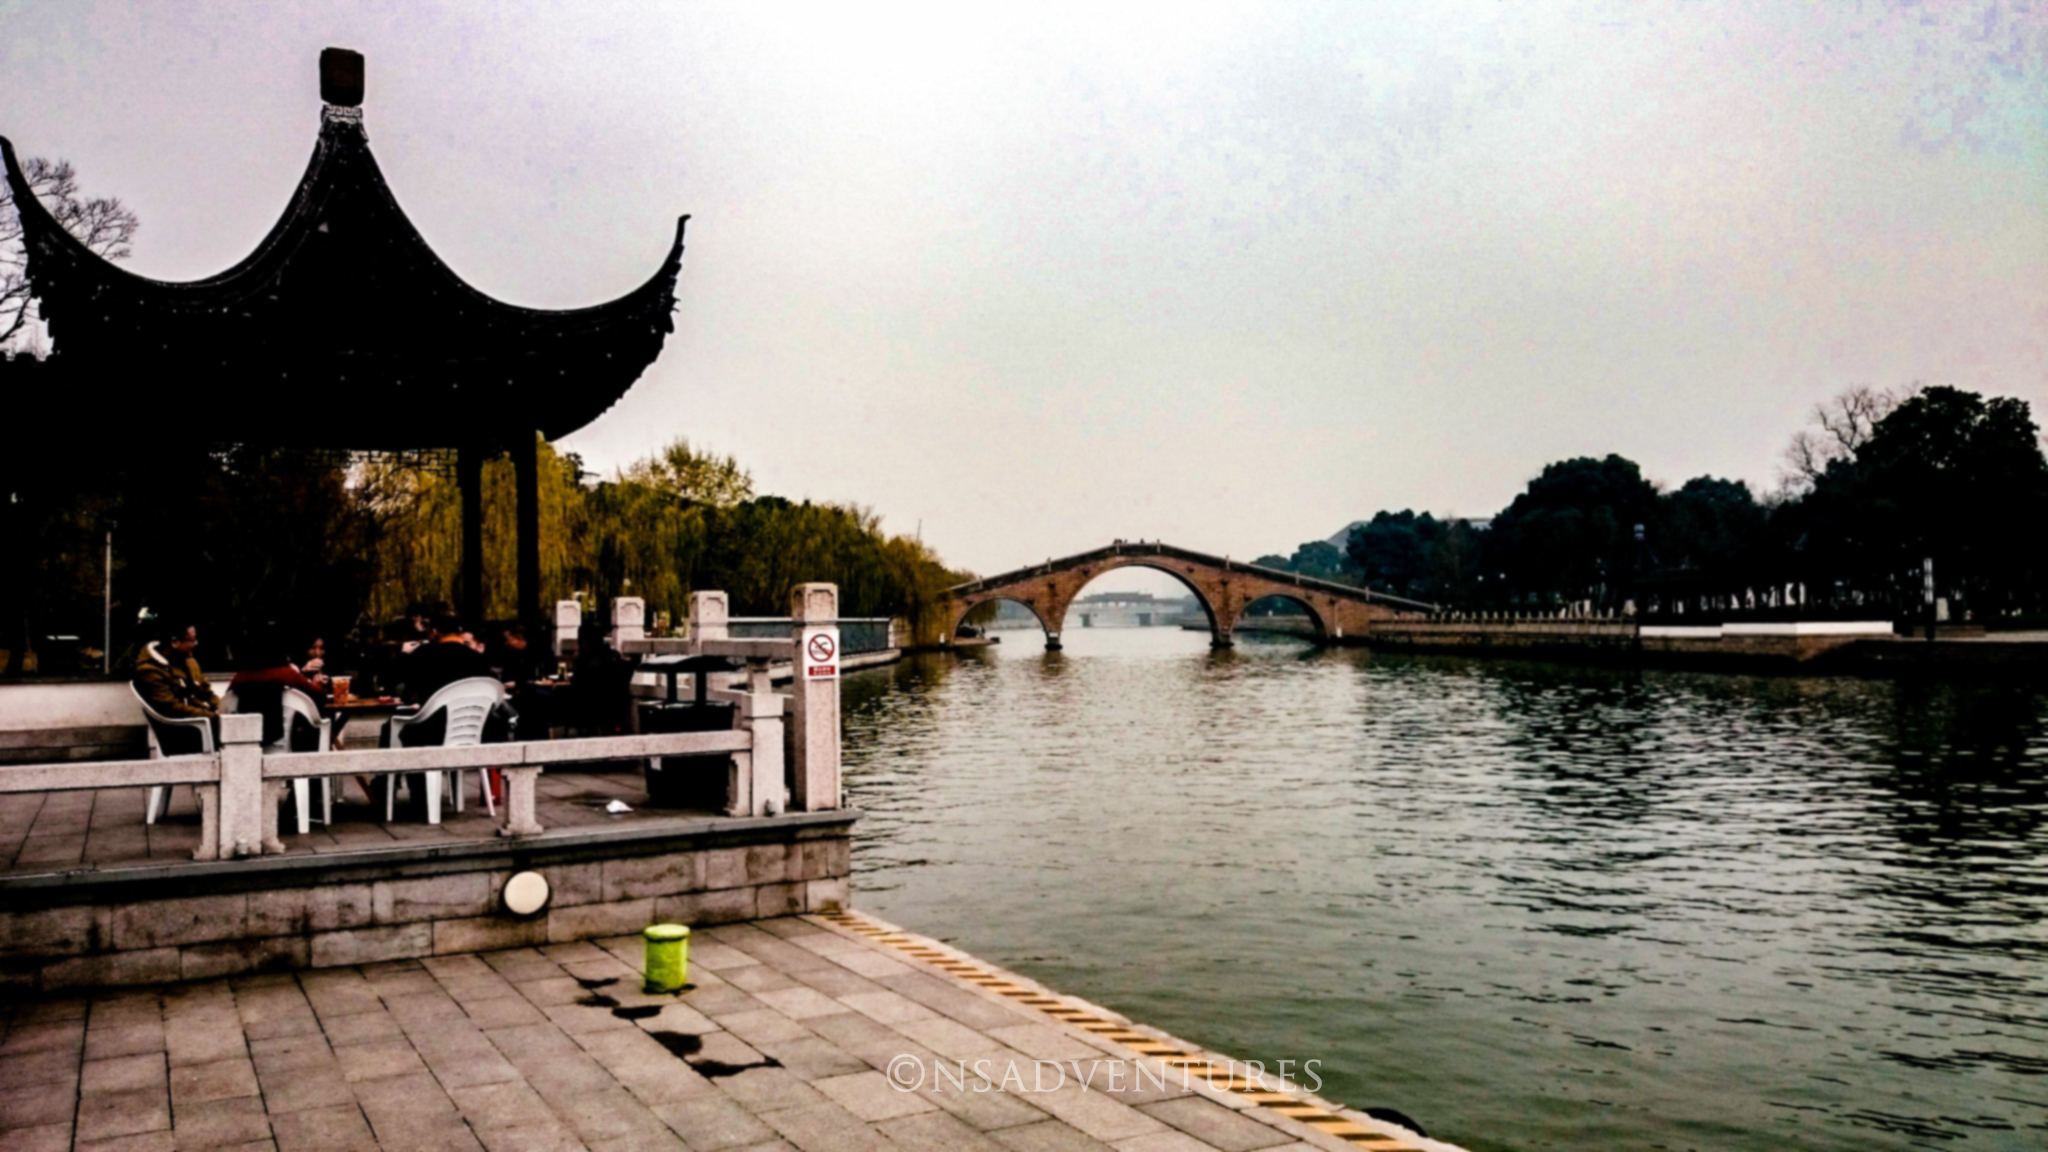 Cosa vedere a Suzhou? Il Canal Grande